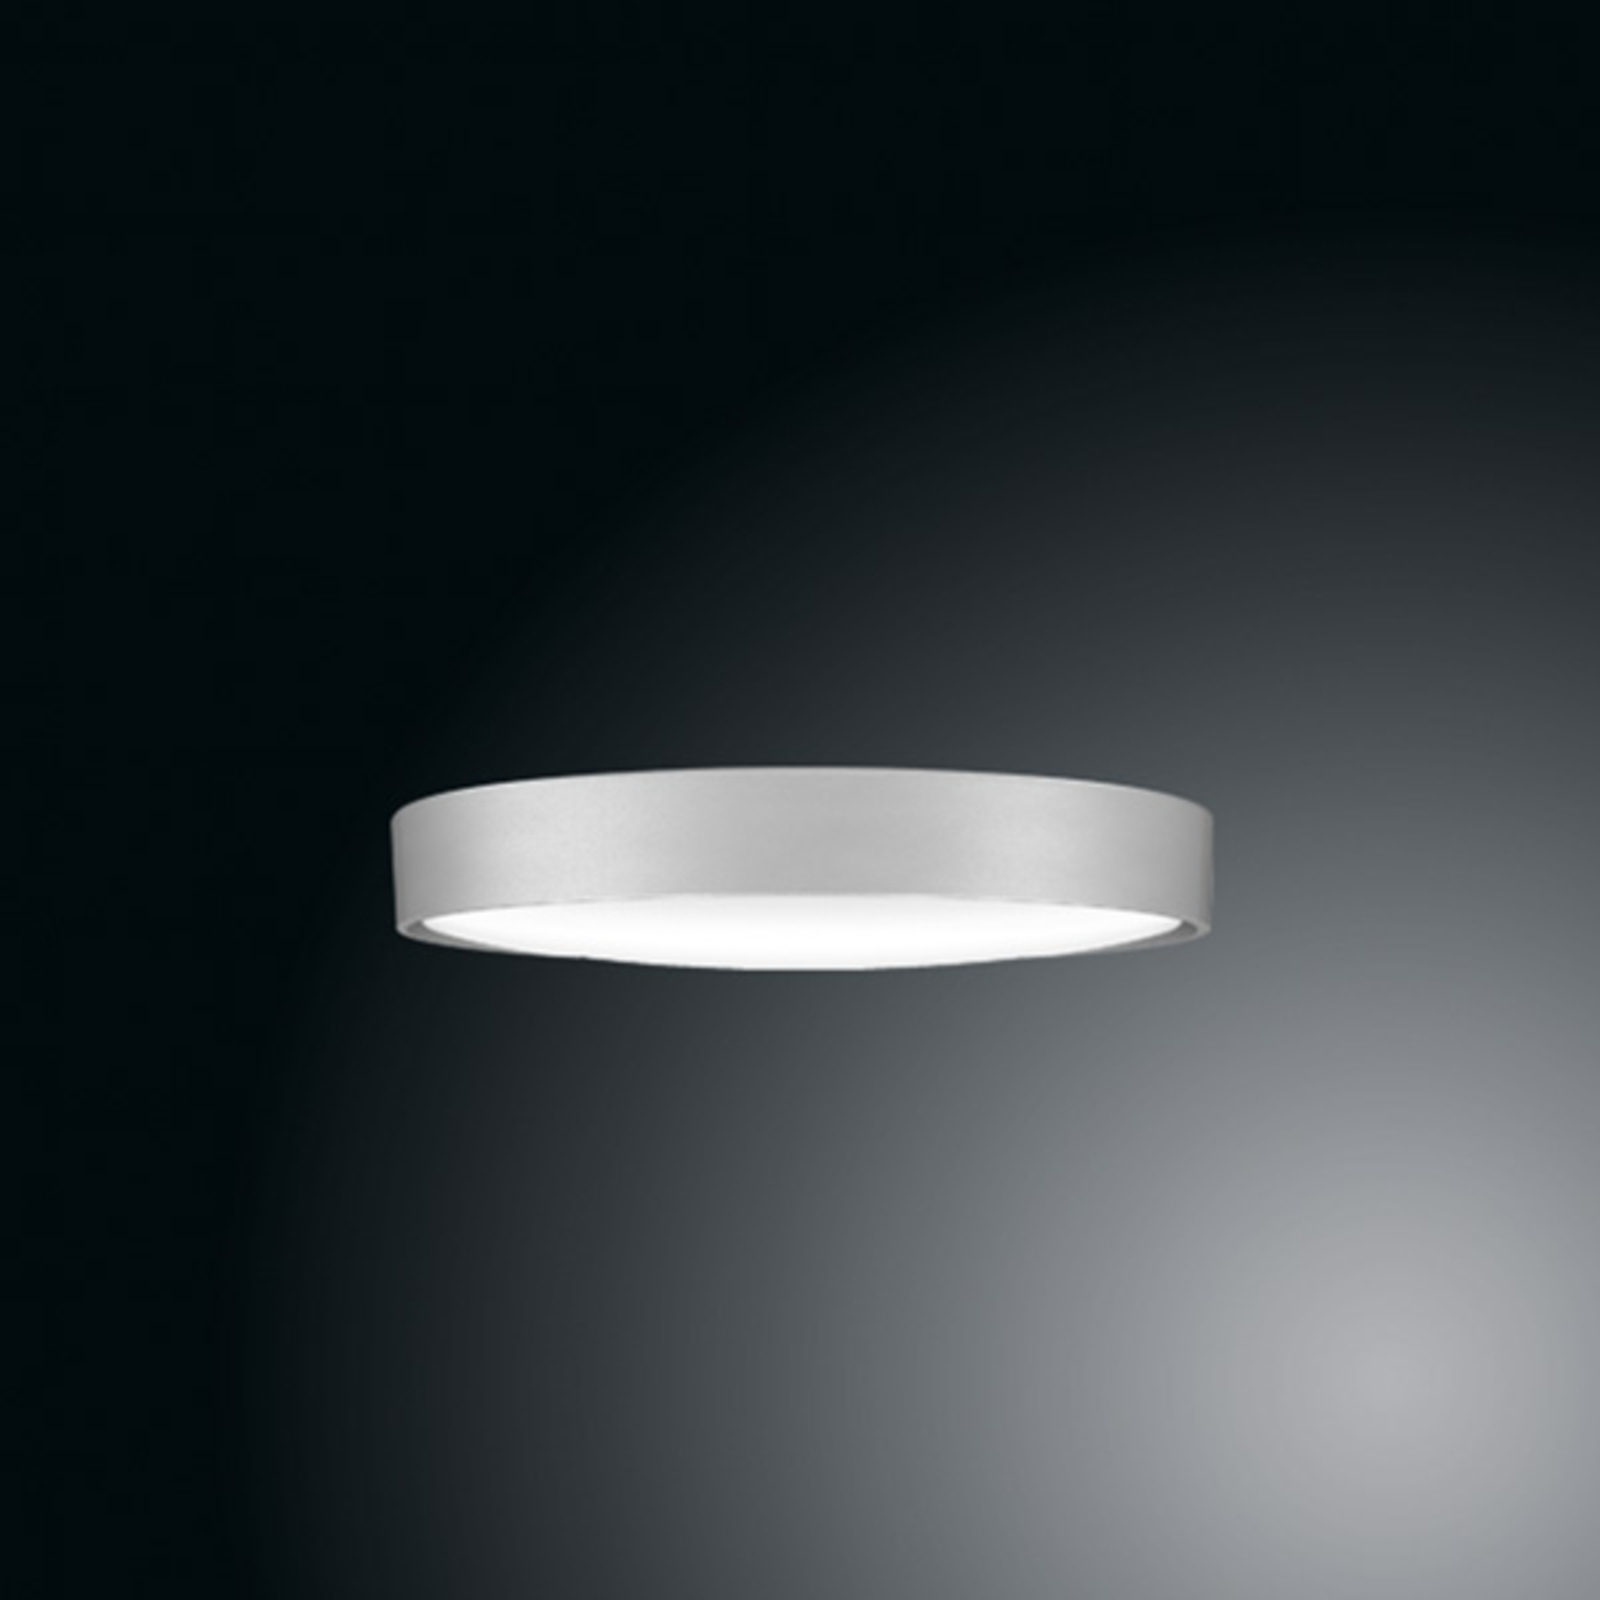 Stropné svietidlo Ribag Arva LED, sivá metalíza, 27 cm